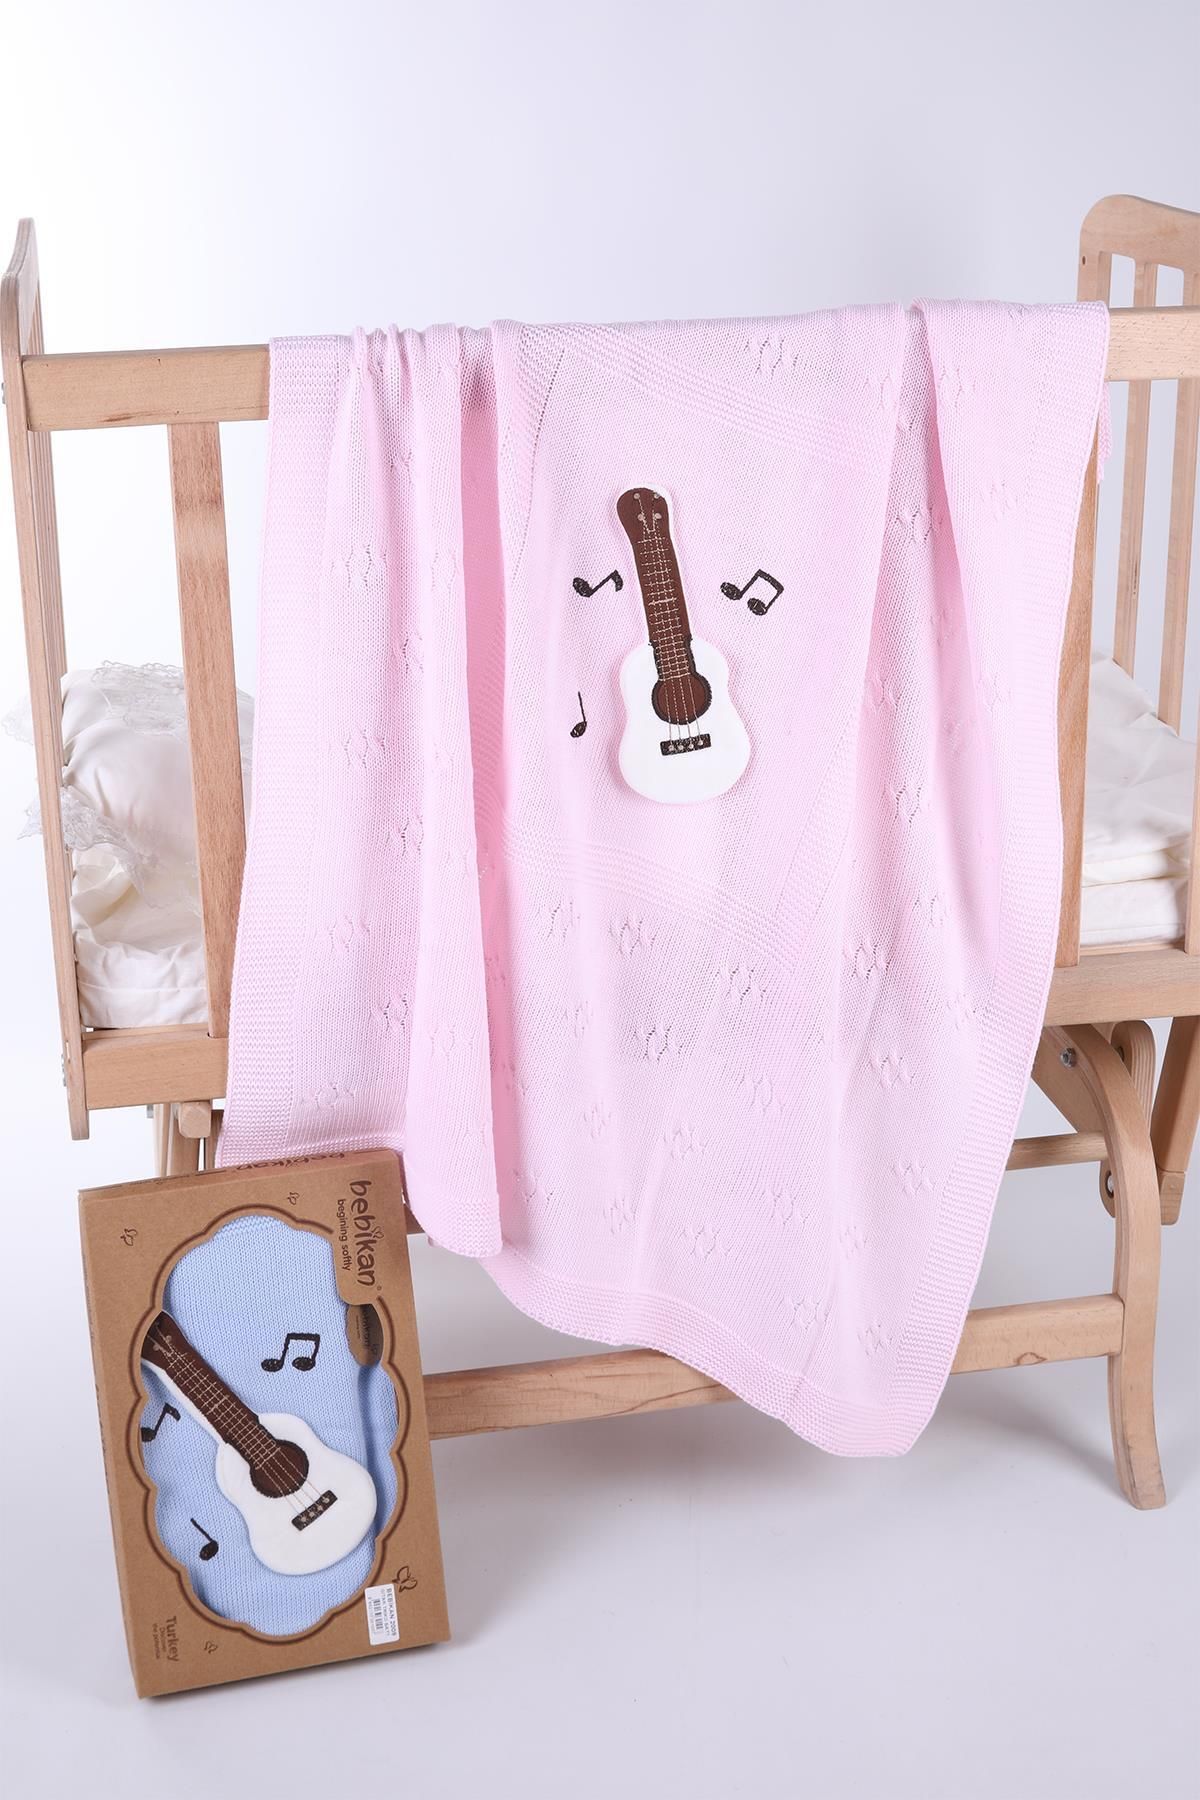 Babyhola Kız Erkek Bebek Triko Battaniye Kutulu Hediyelik Sevimli Hayvanlar 3 Boyutlu Gitar Figürü 2